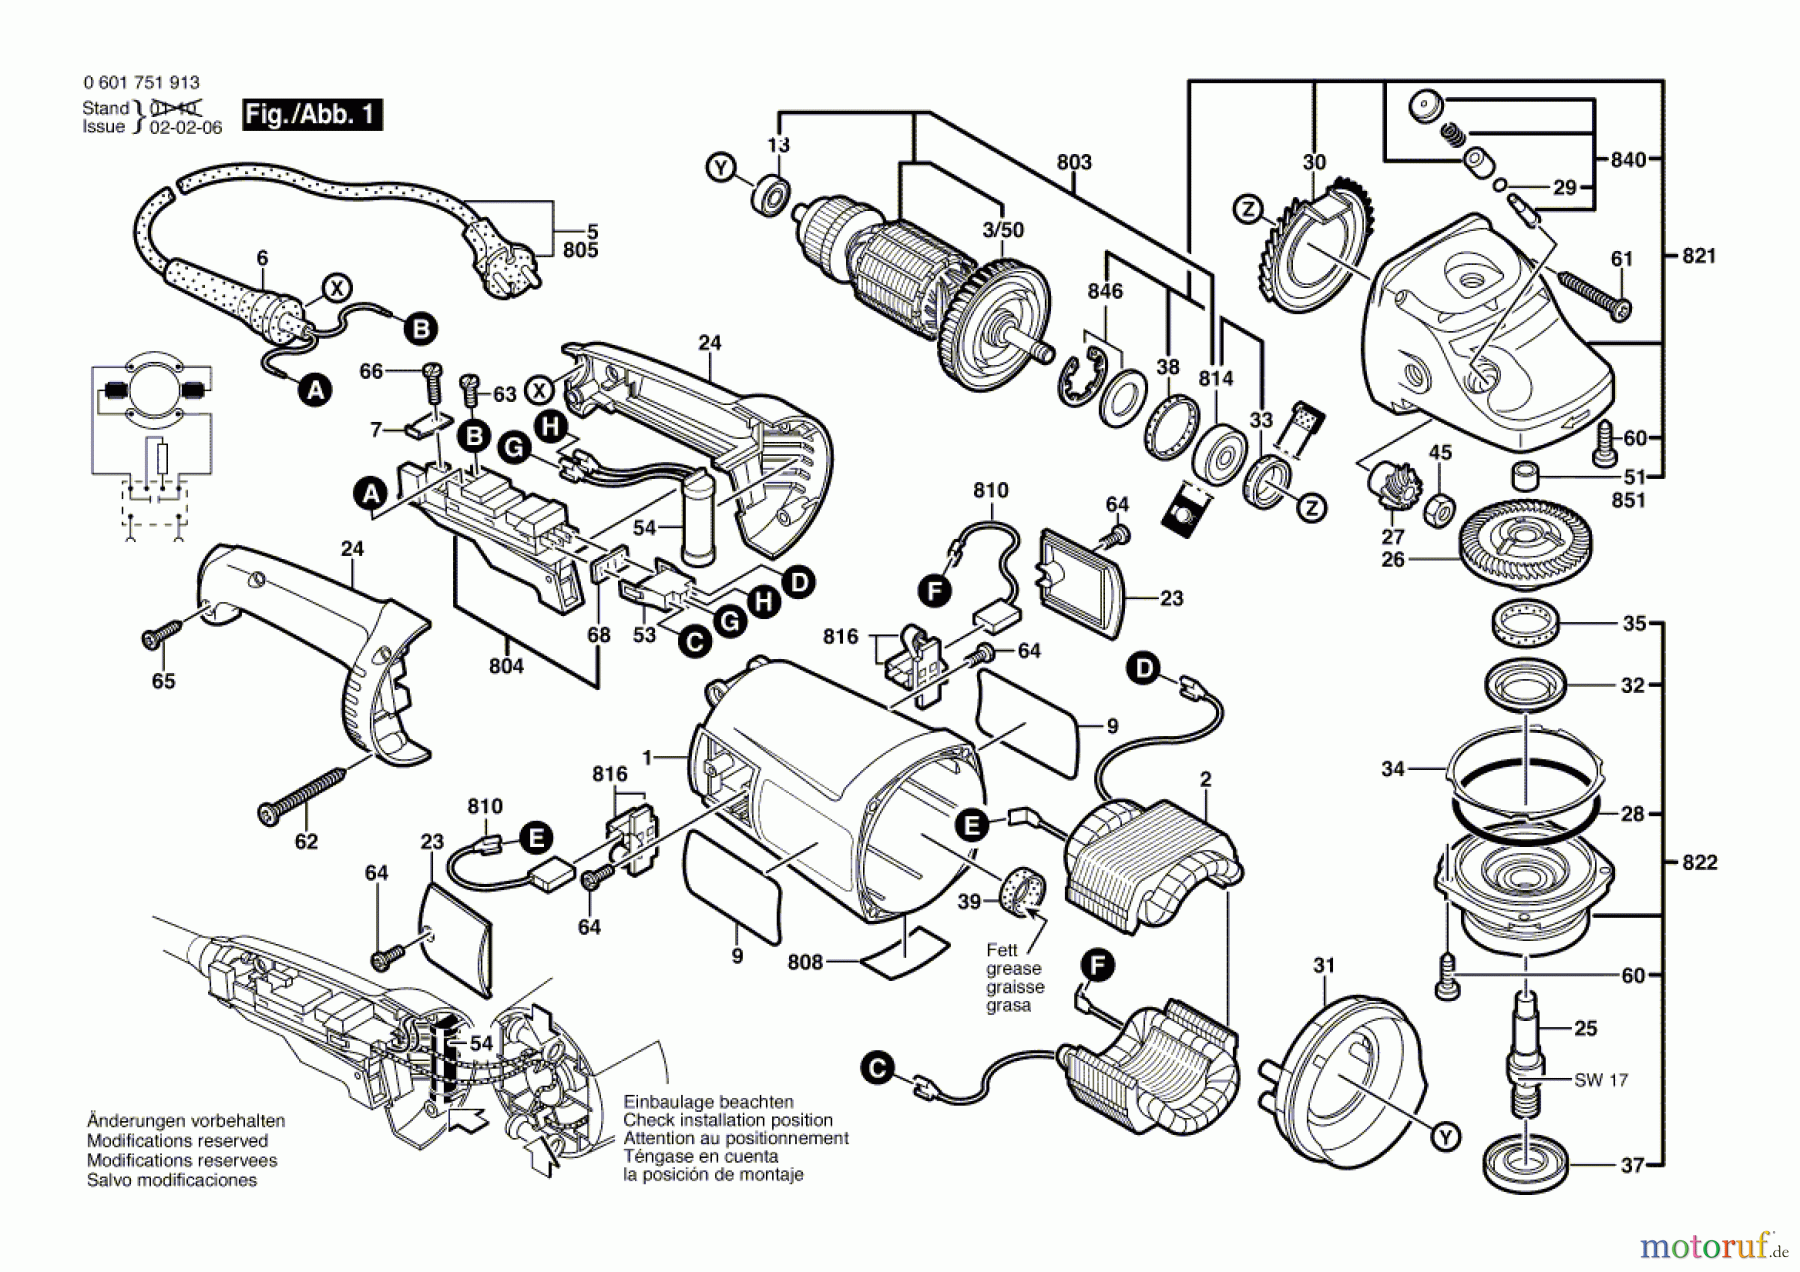  Bosch Werkzeug Winkelschleifer GWS 20-180 J Seite 1